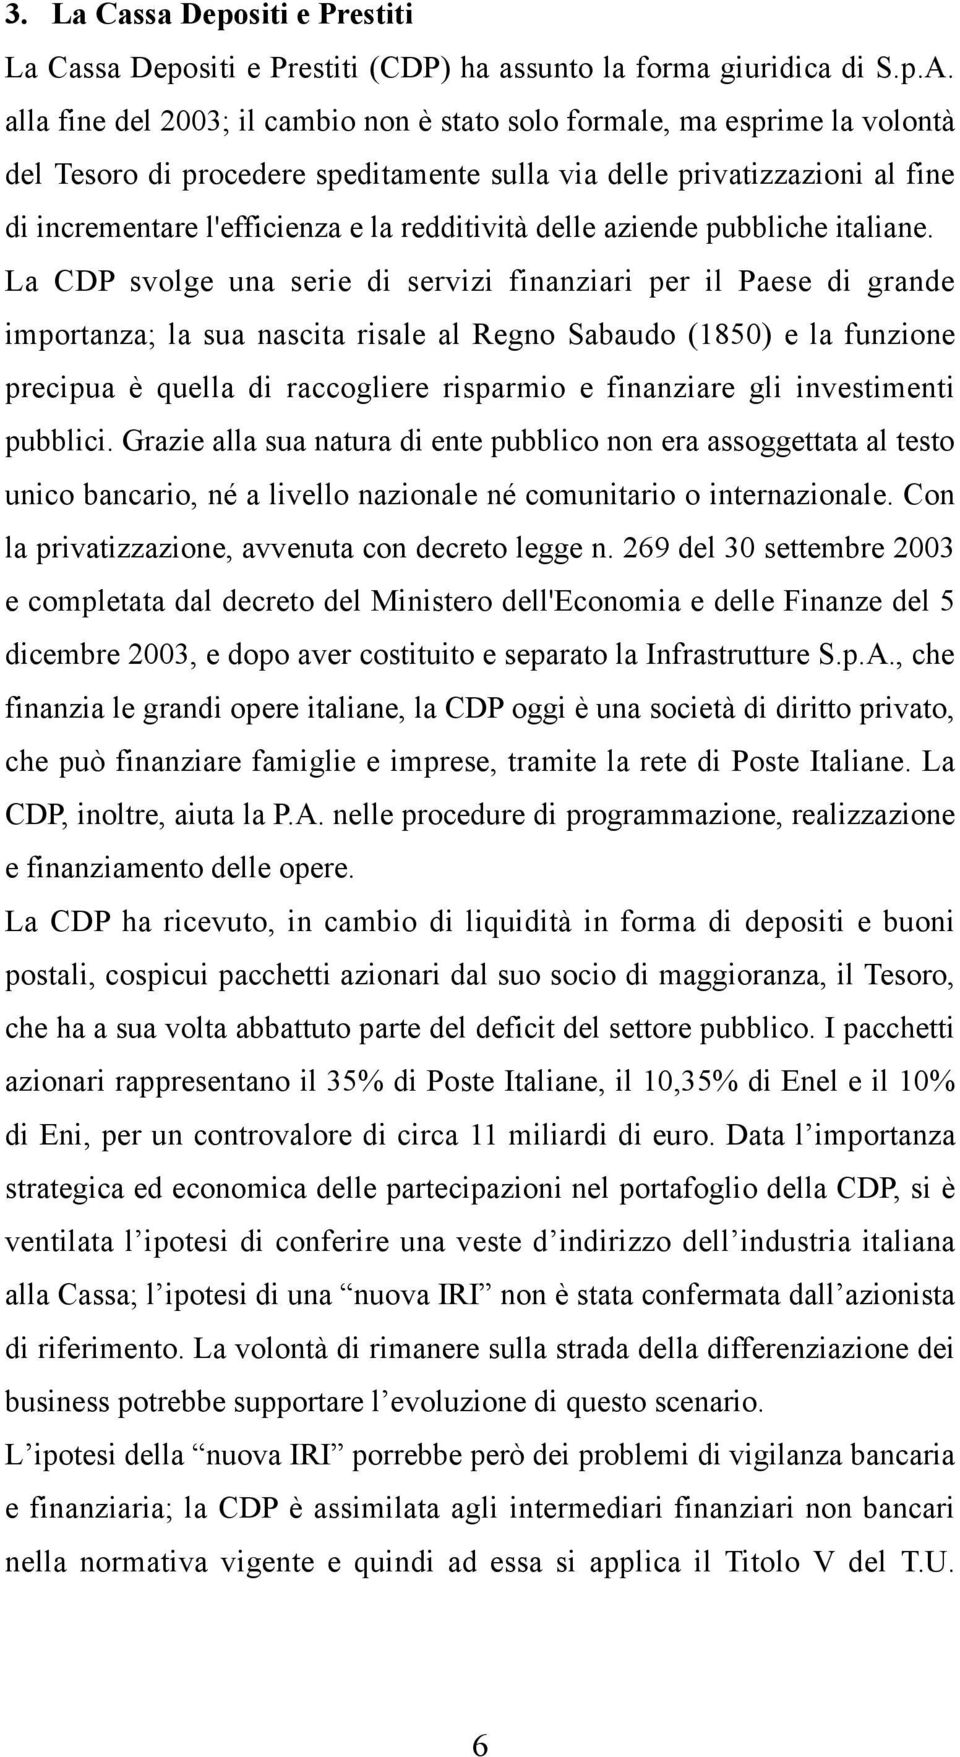 redditività delle aziende pubbliche italiane.